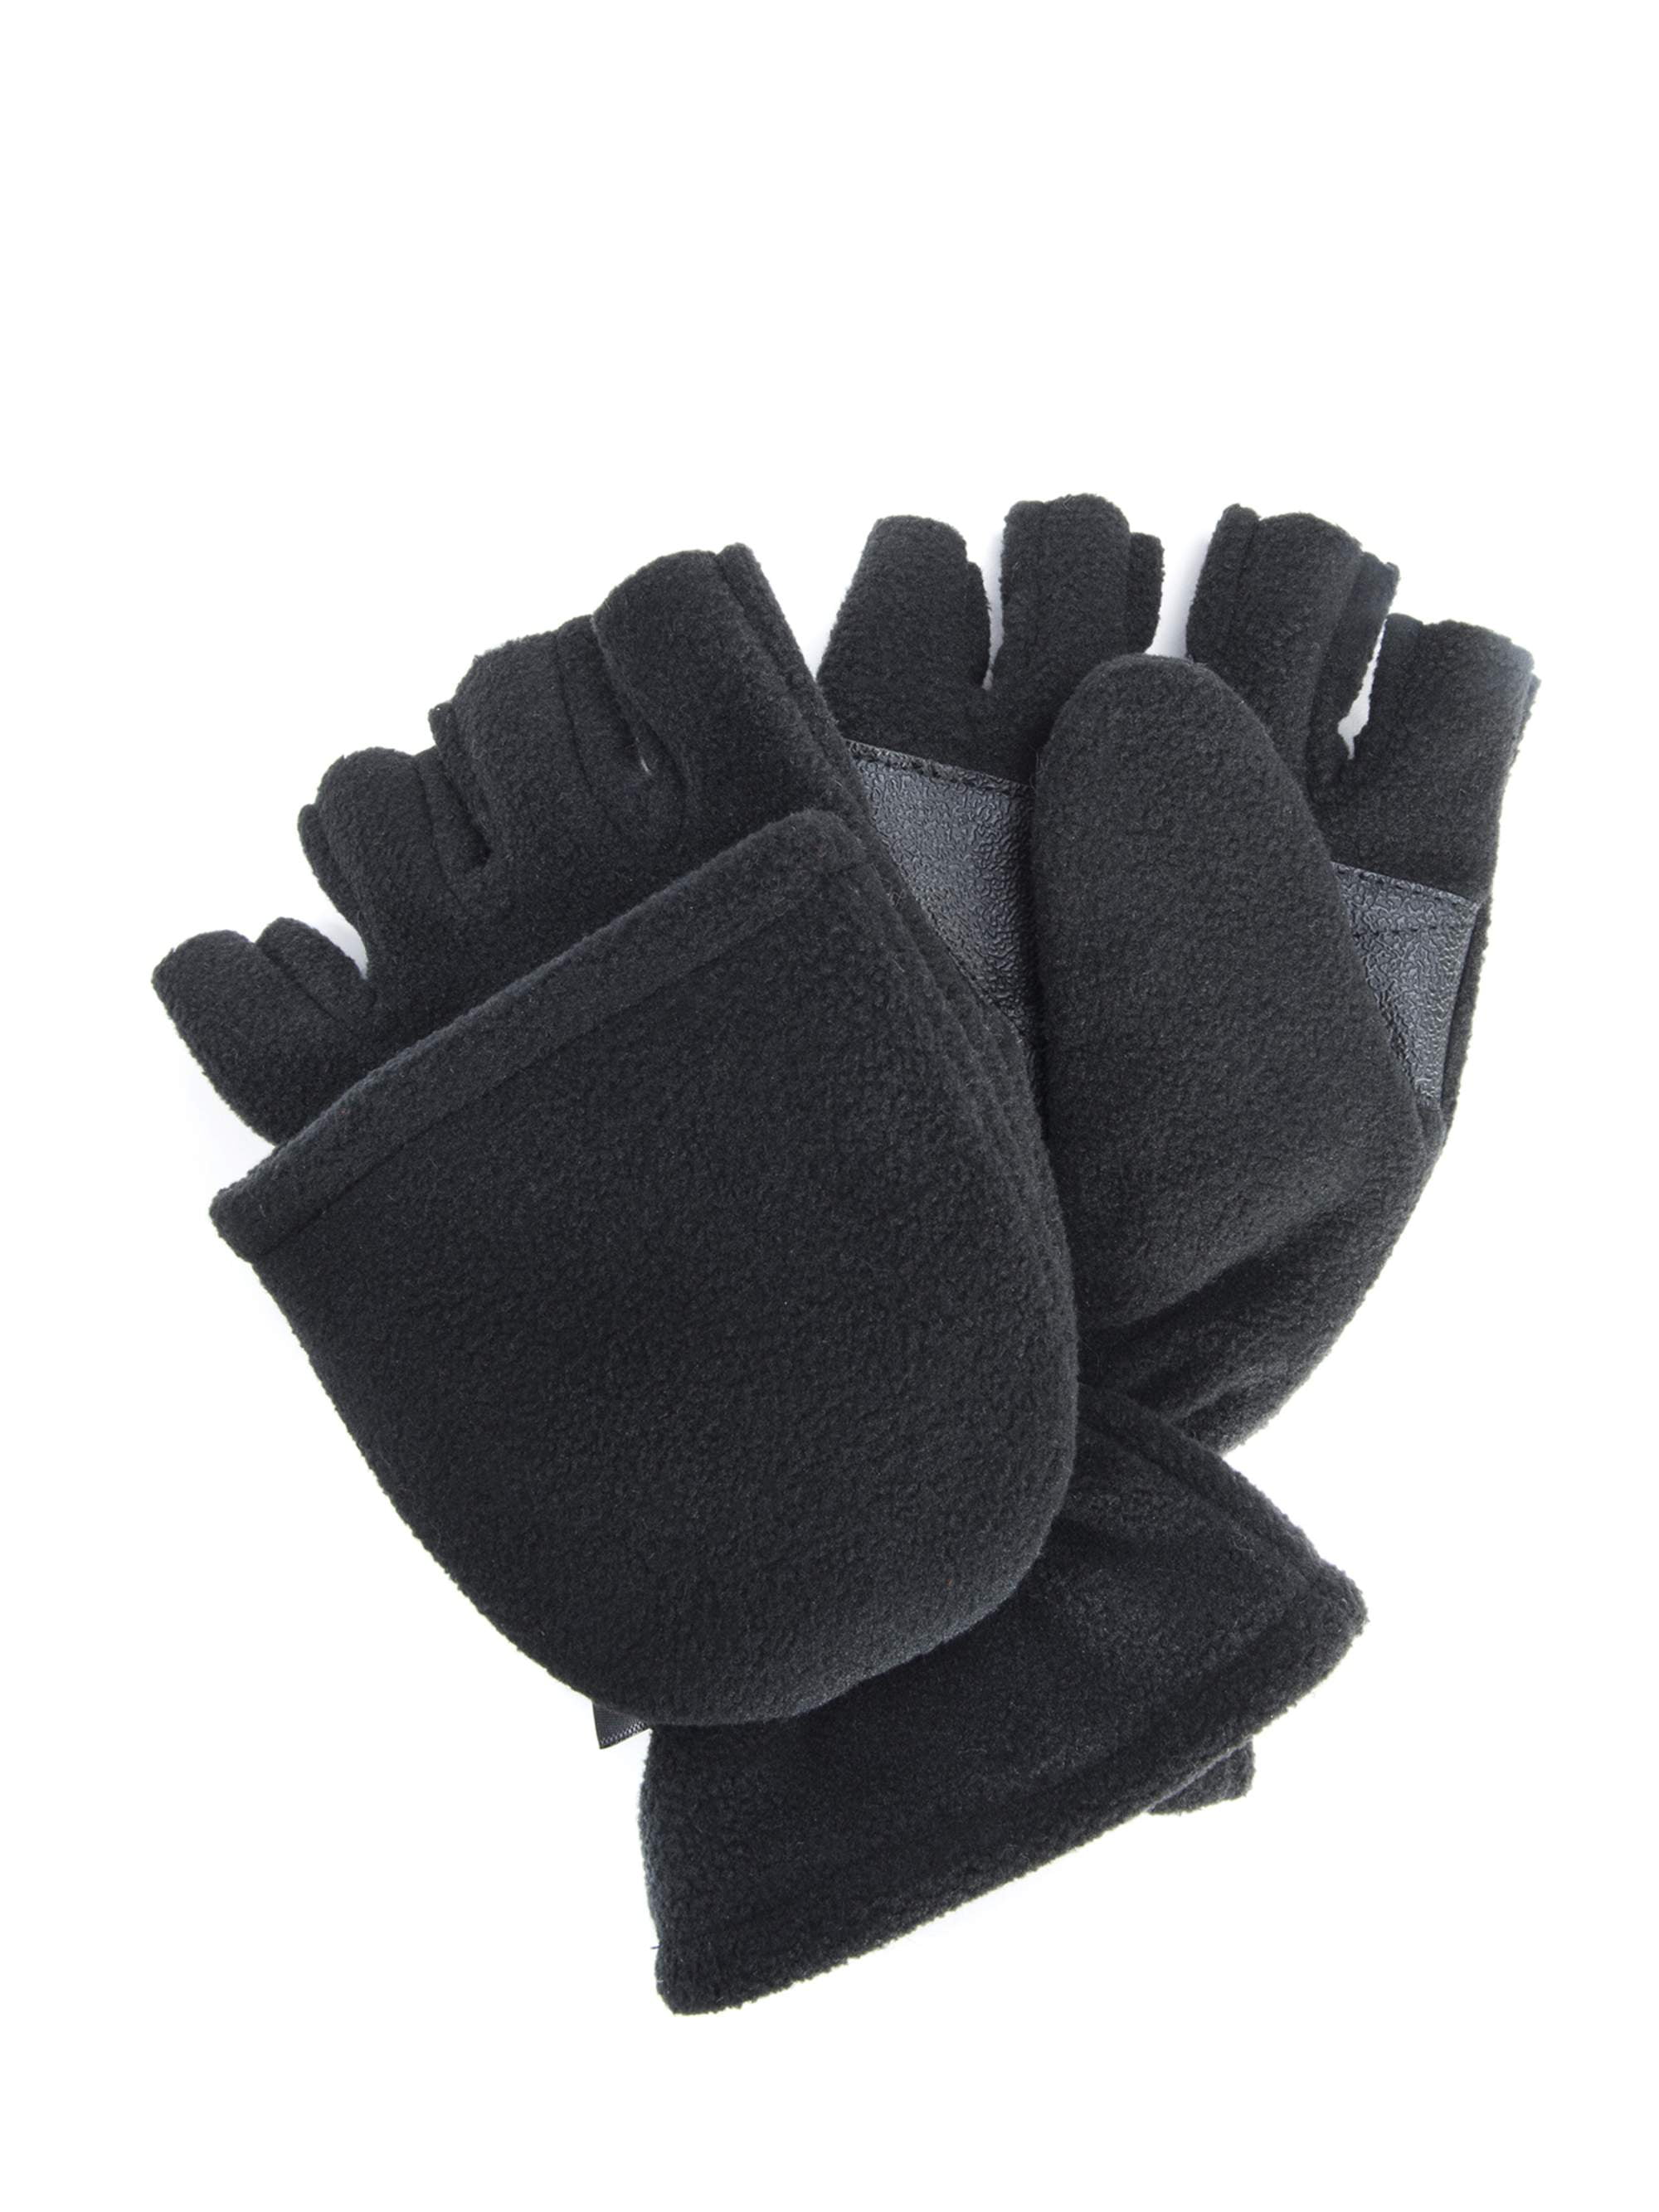 Glacier Glove Alaska River Black Flip Mitt Glove Fishing Hybrid Mitten Glove 